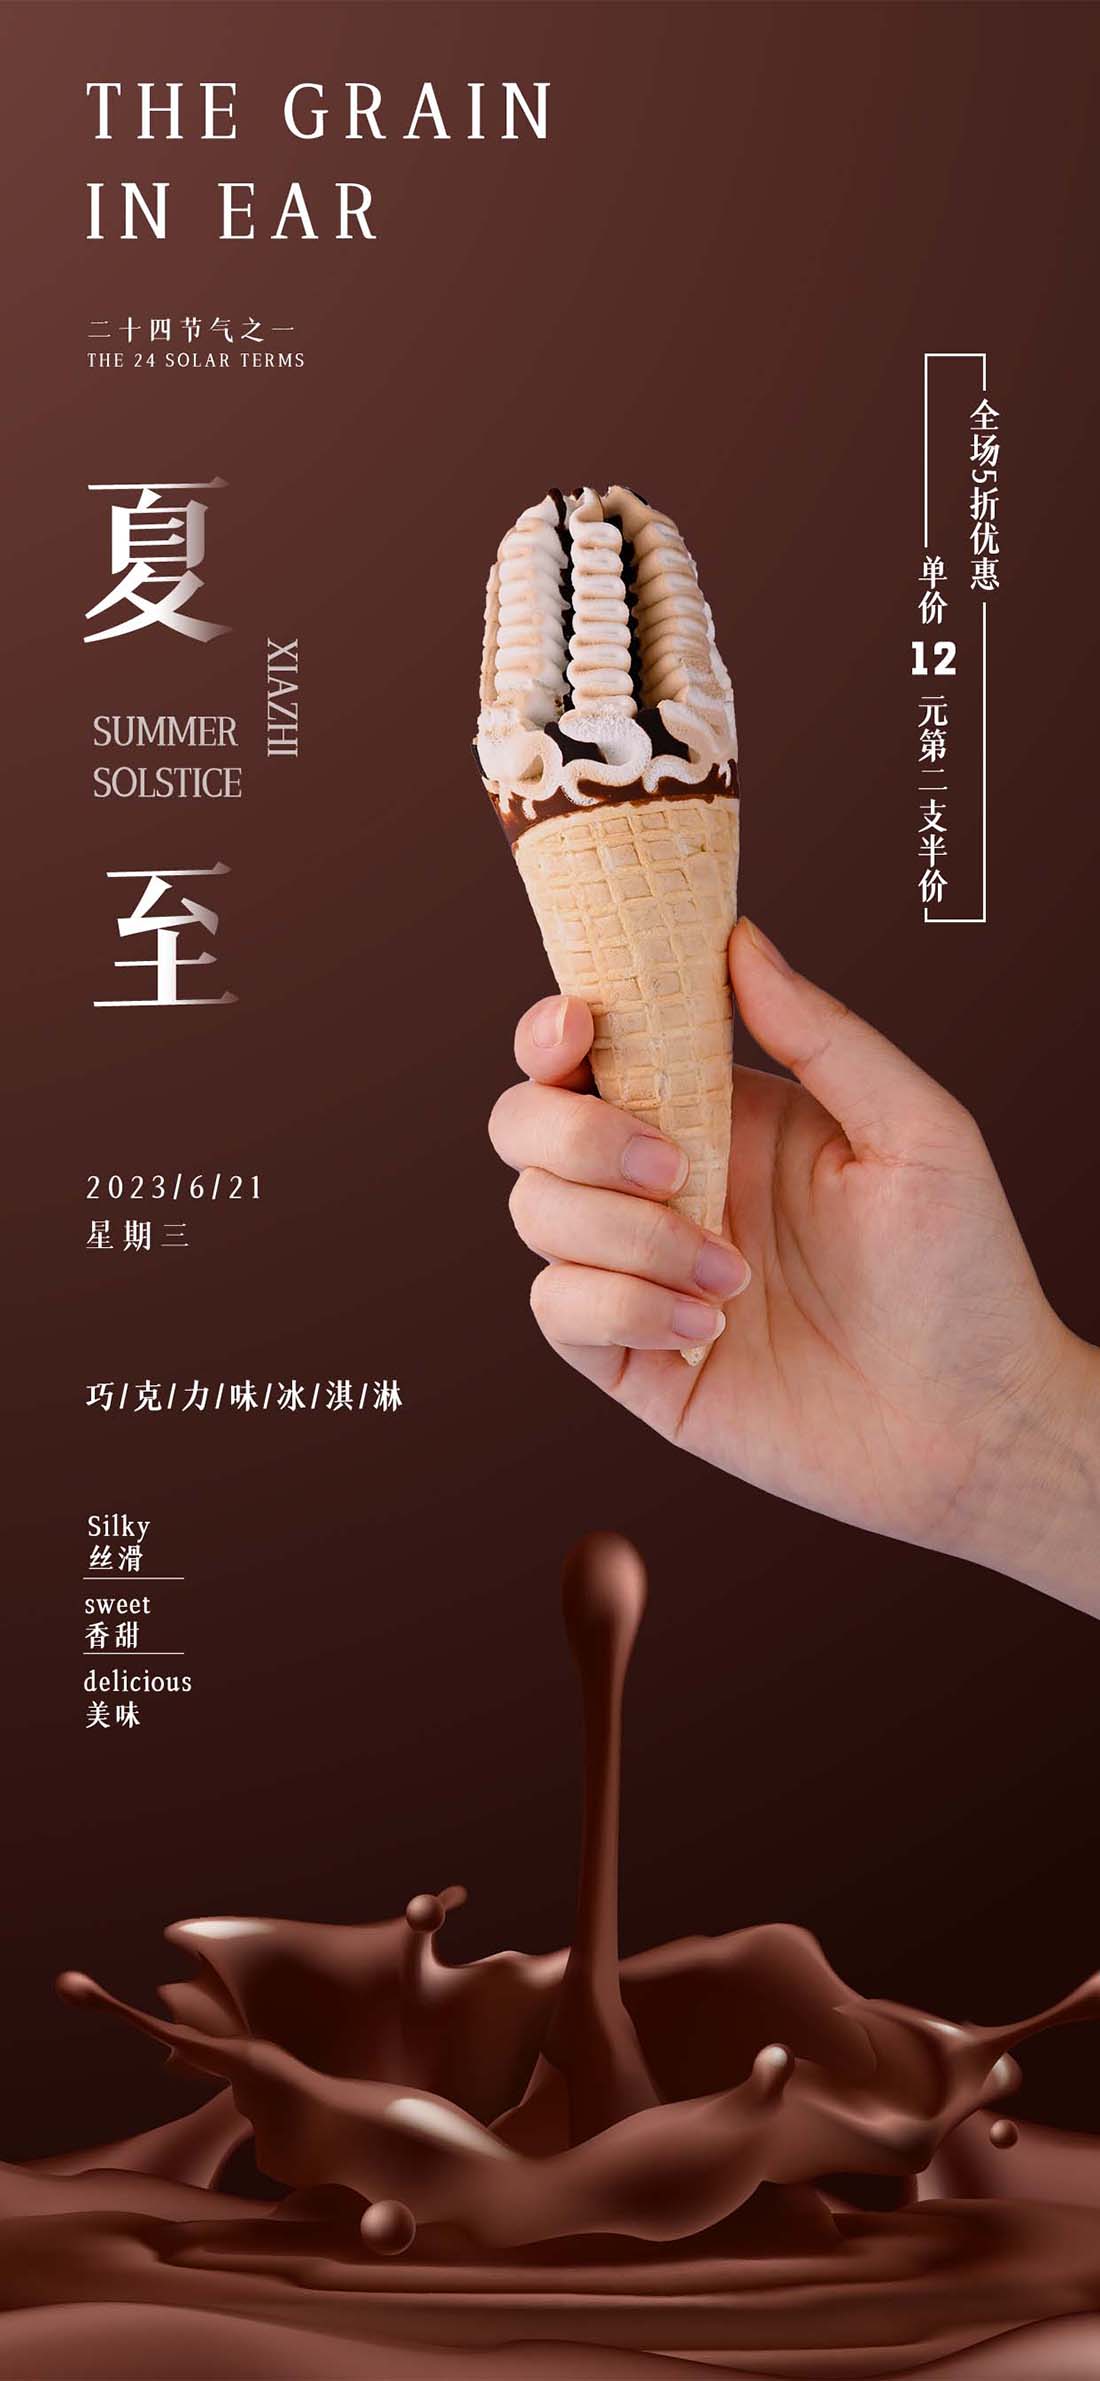 夏至巧克力冰淇淋新品促销餐饮